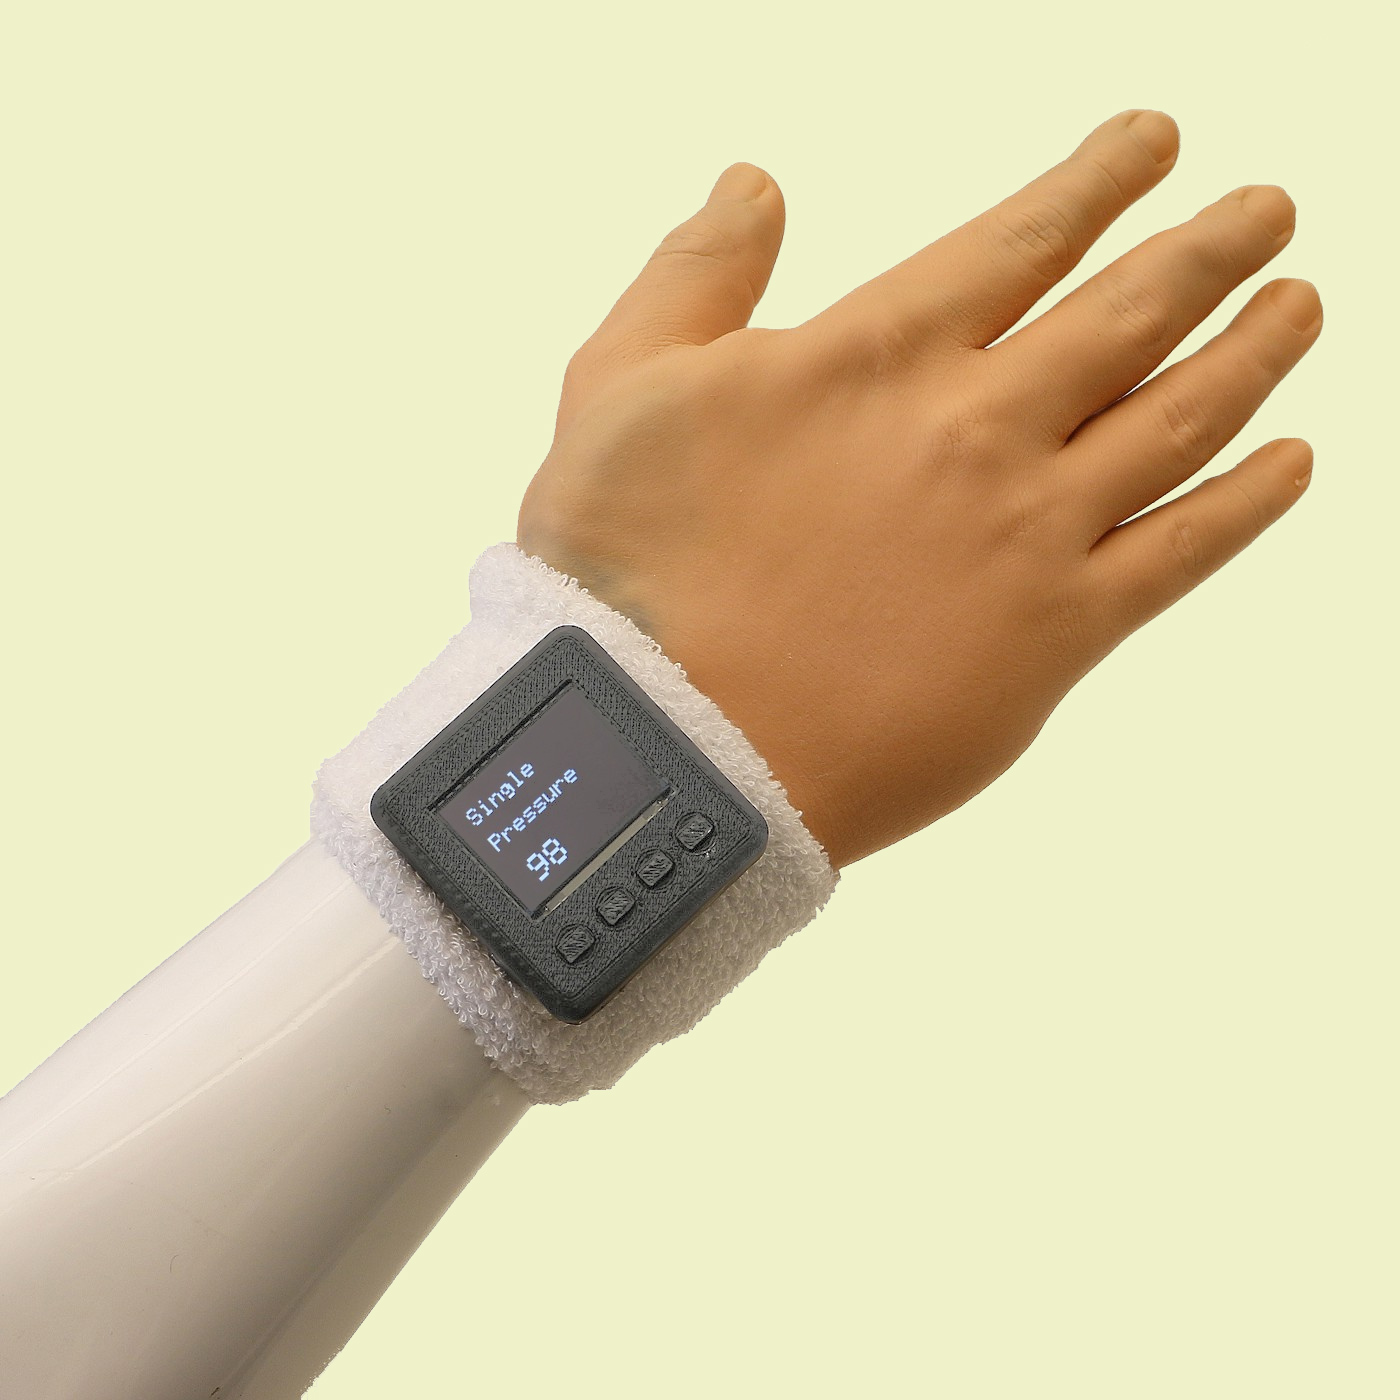 manchetes | e-Luva flexível, sensores de dar mãos uma sensação de toque " Kurzweil 5